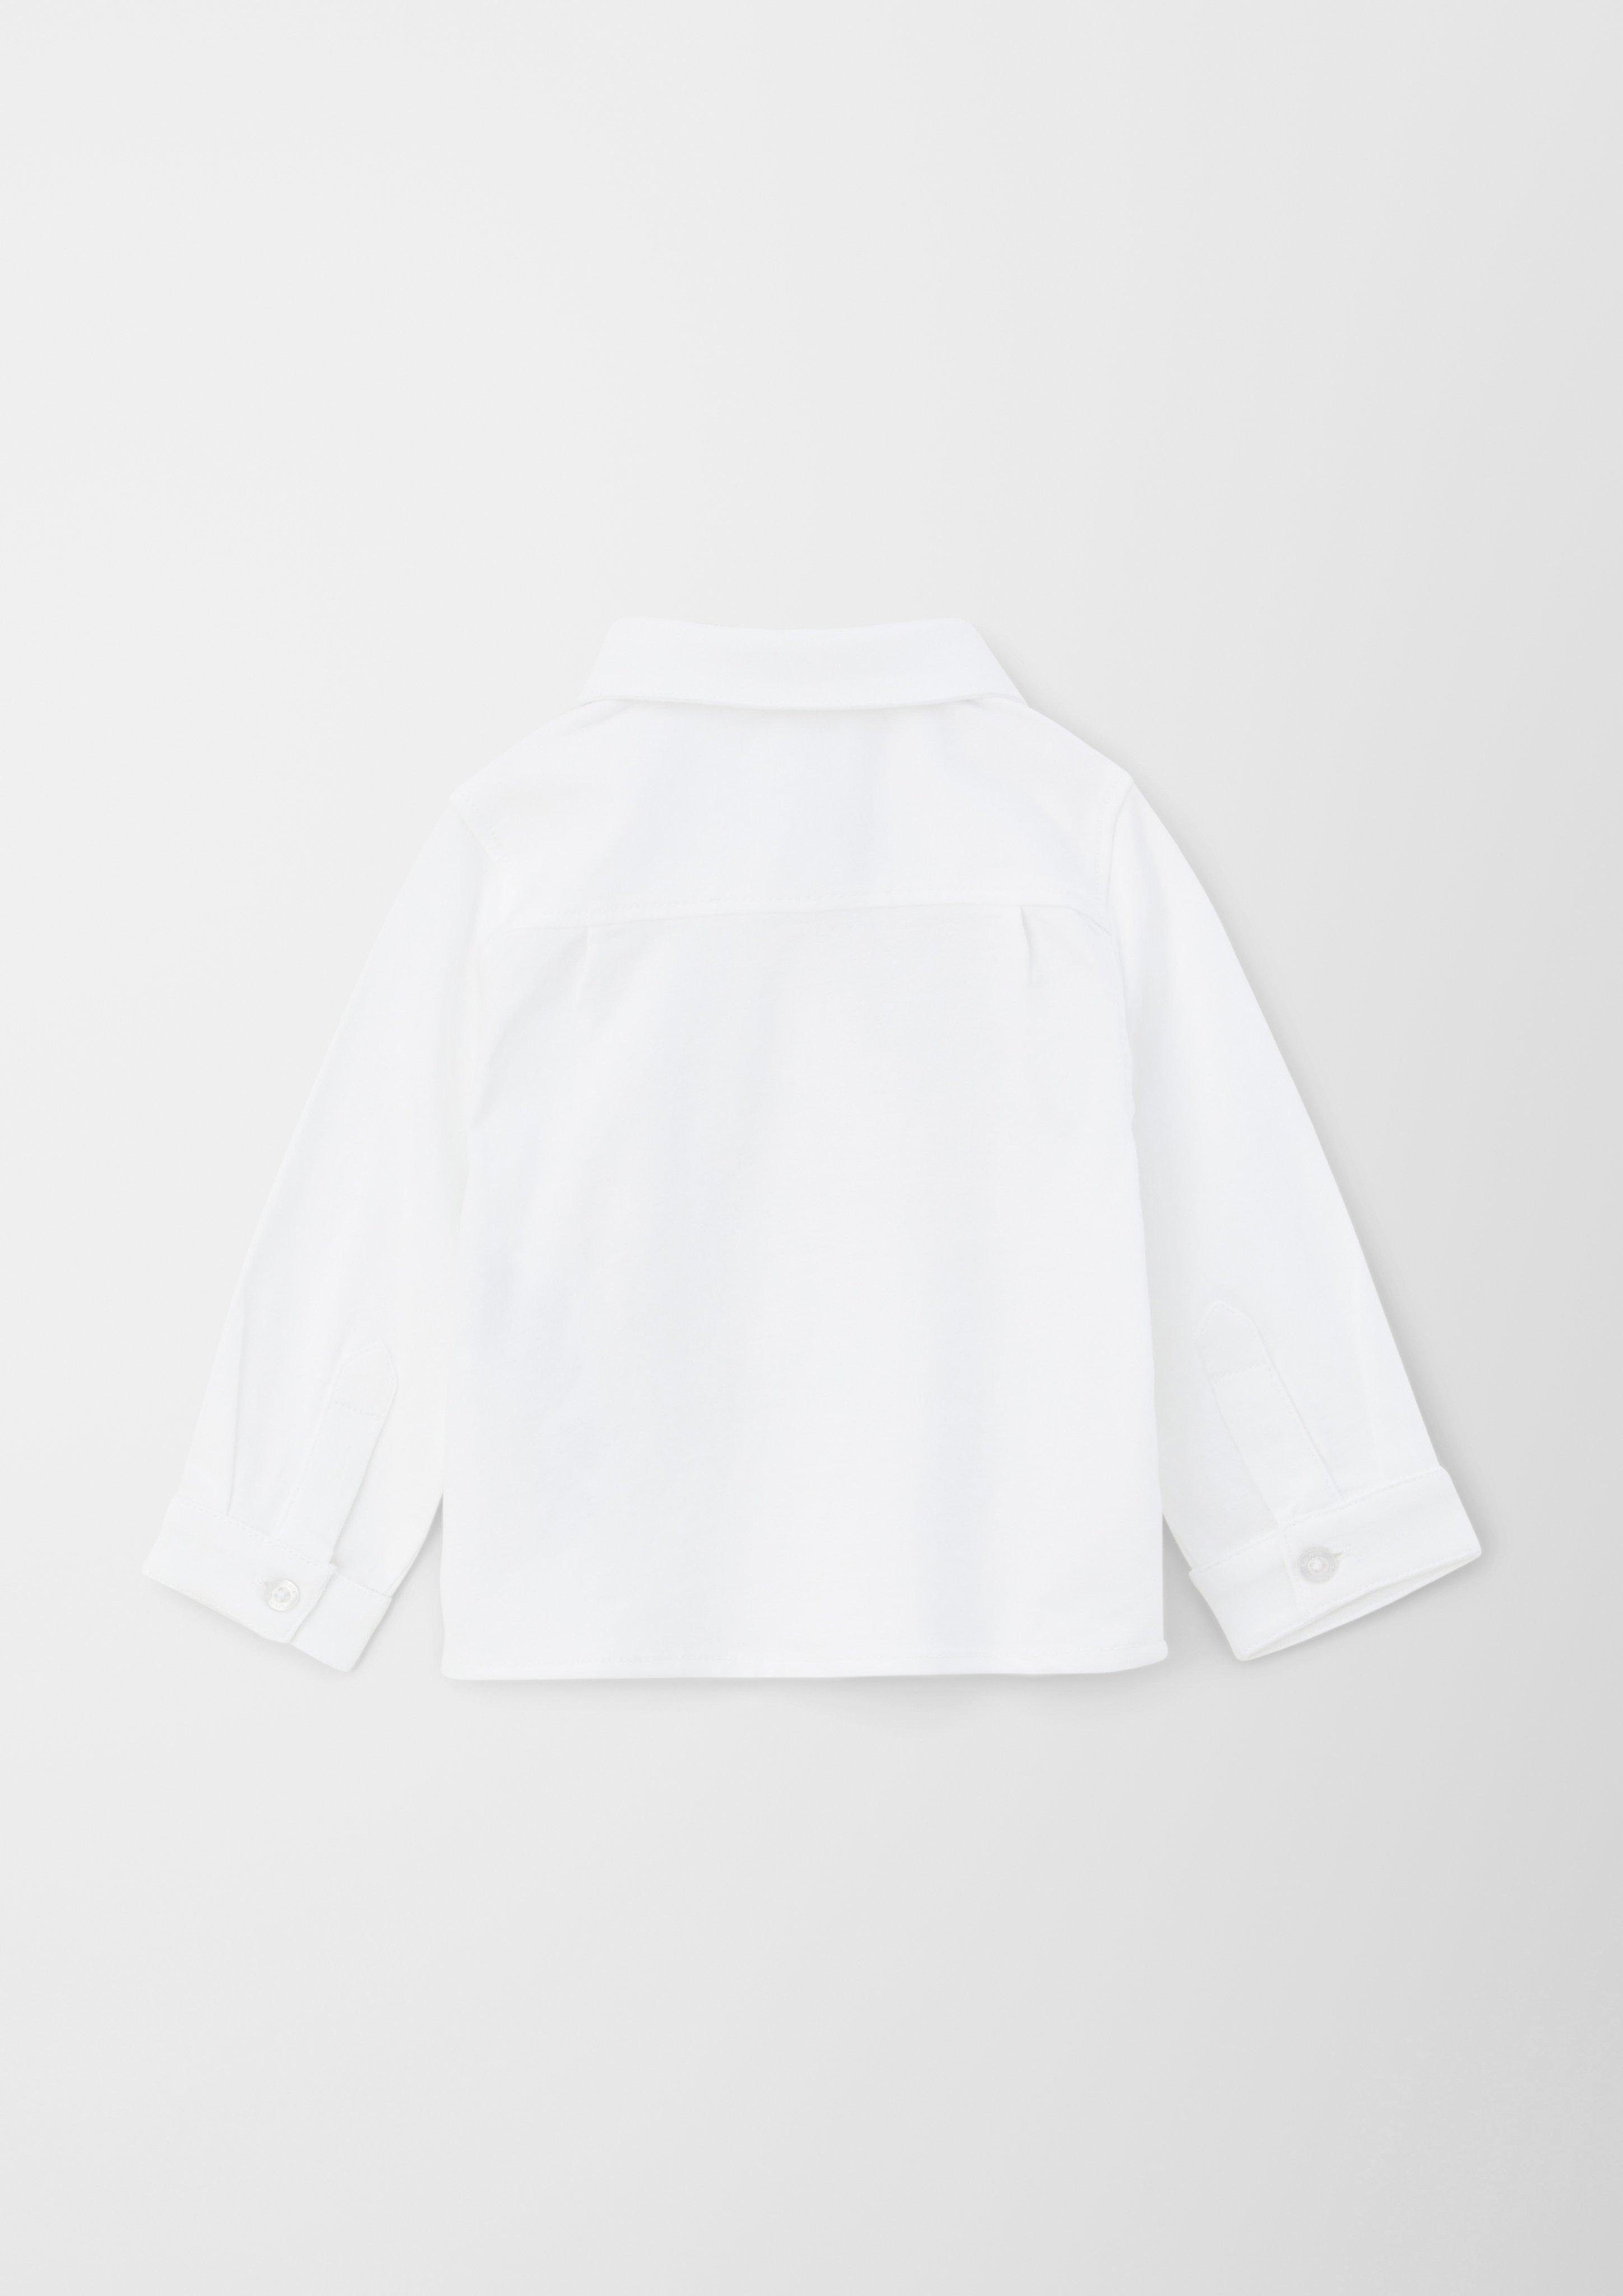 Jersey-Hemd Langarmhemd Fliege weiß abnehmbarer mit s.Oliver